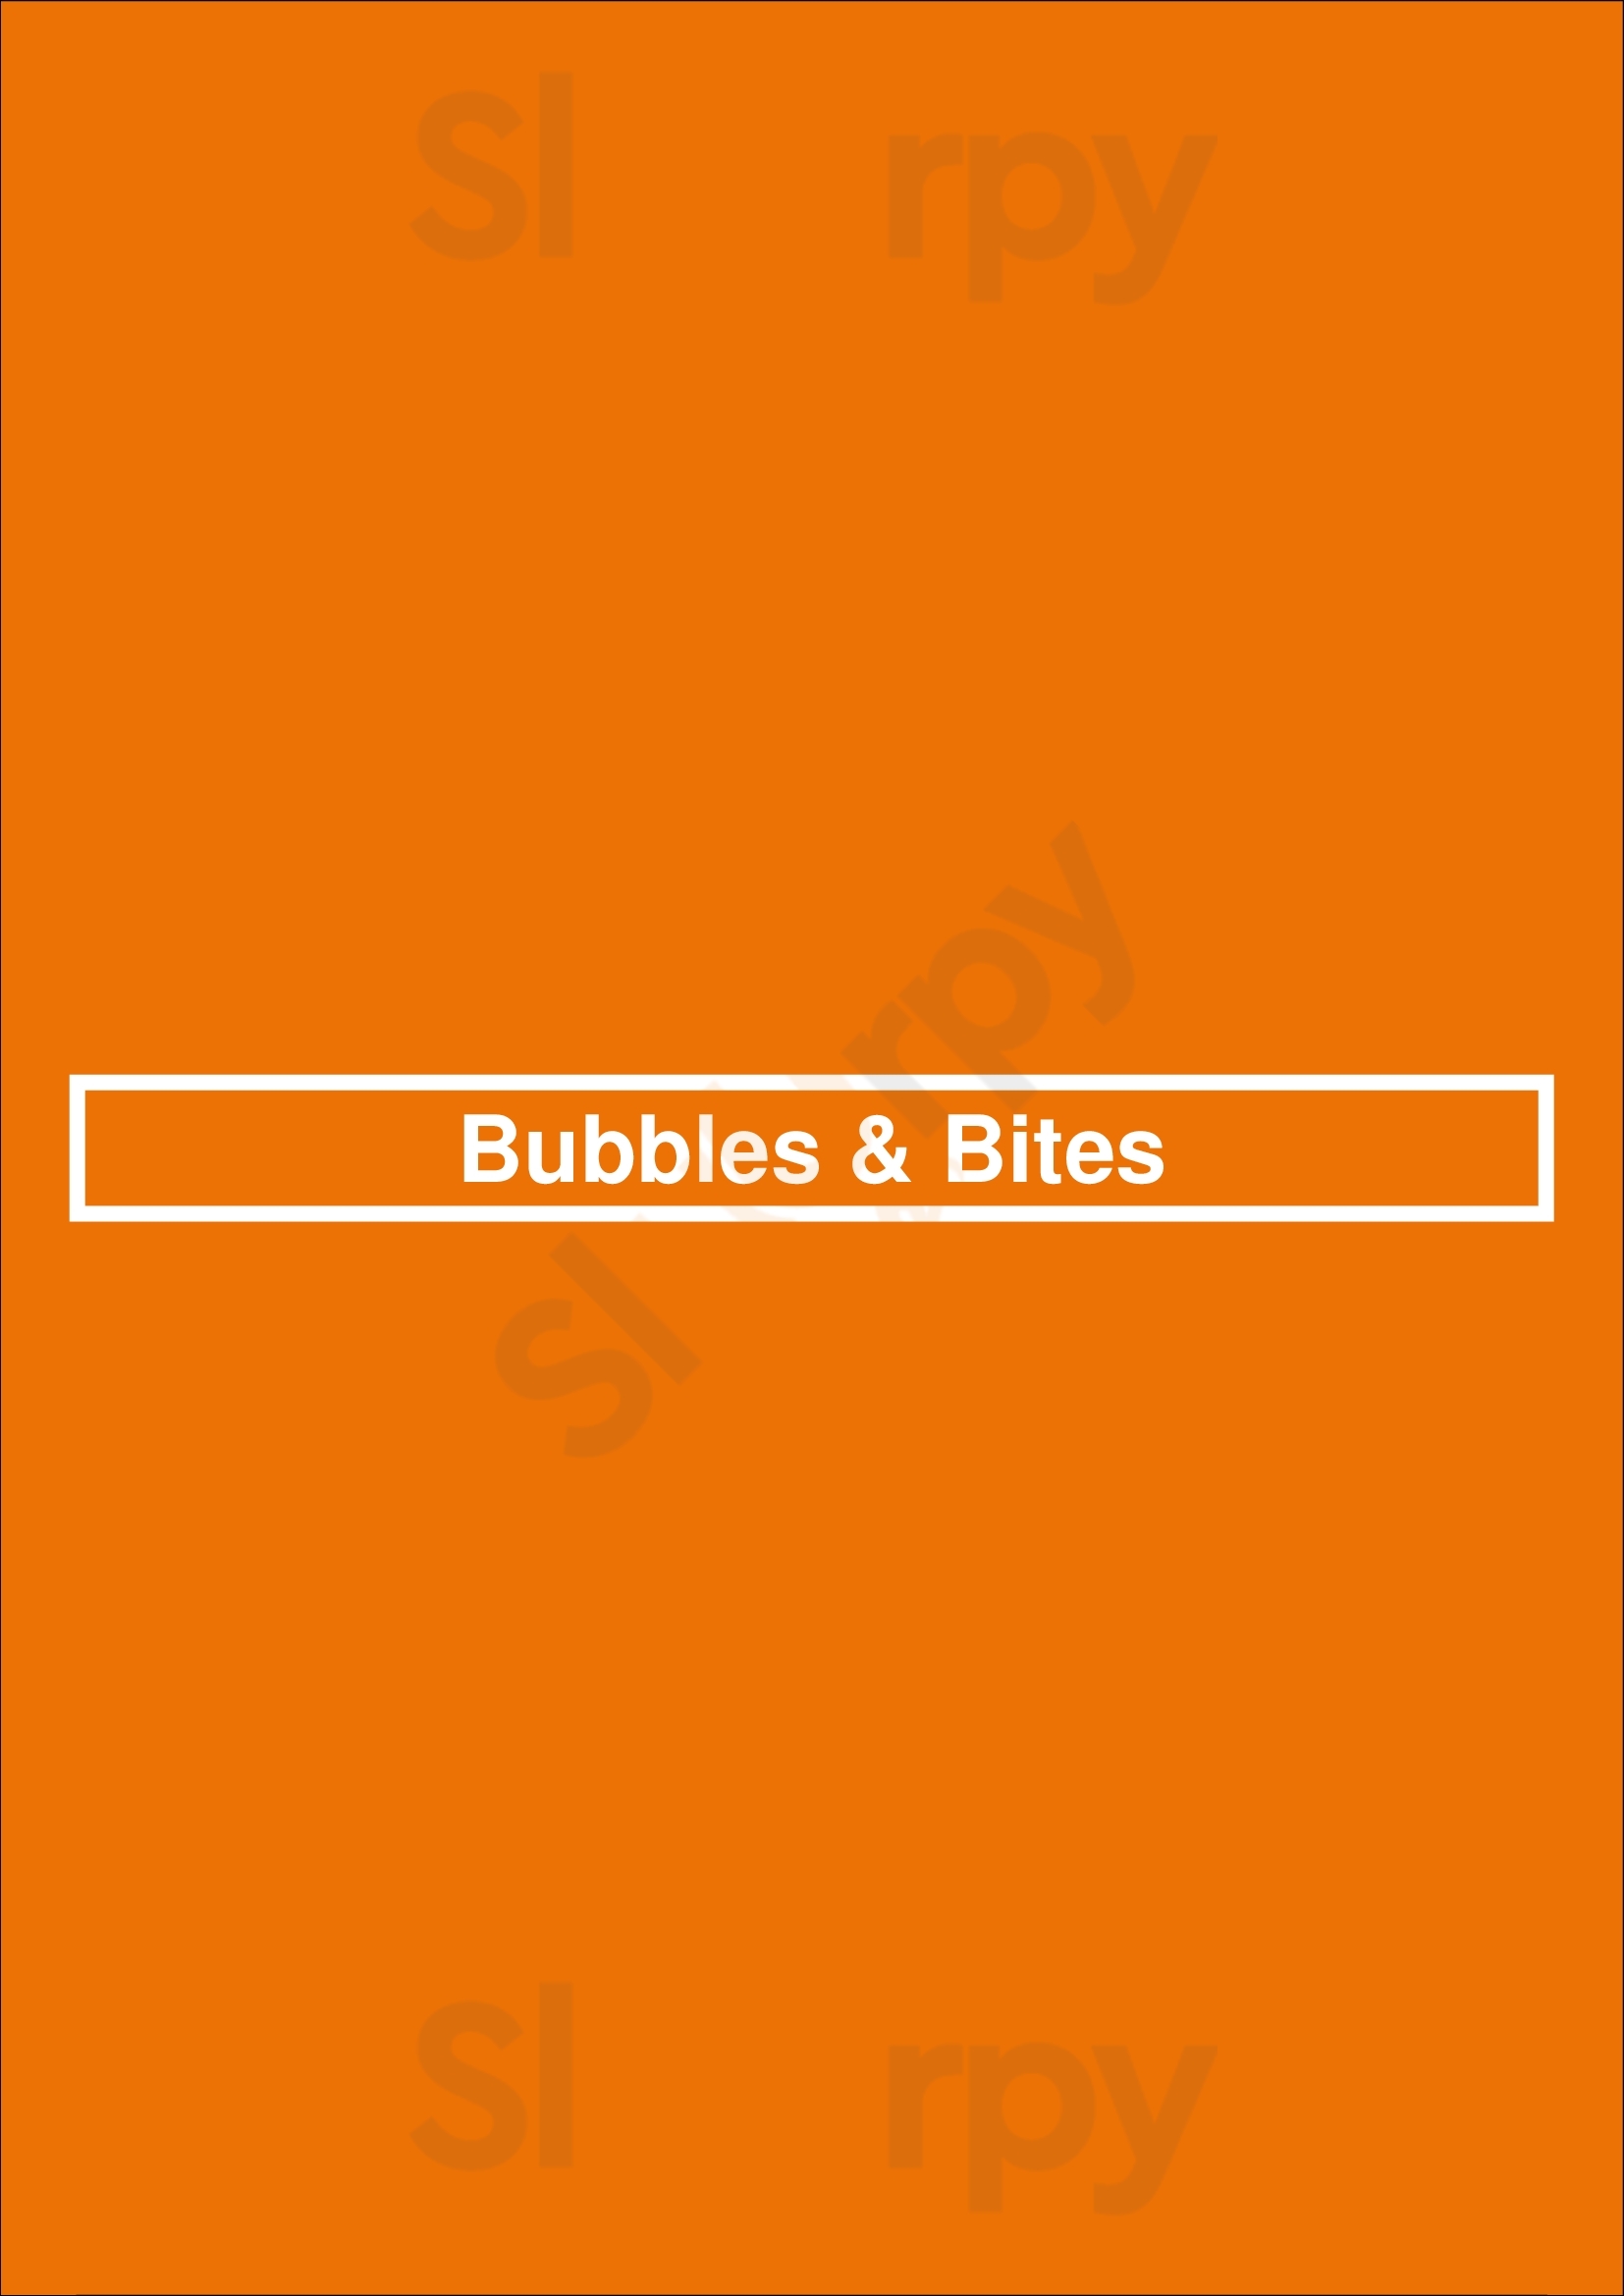 Bubbles & Bites Cascais Menu - 1